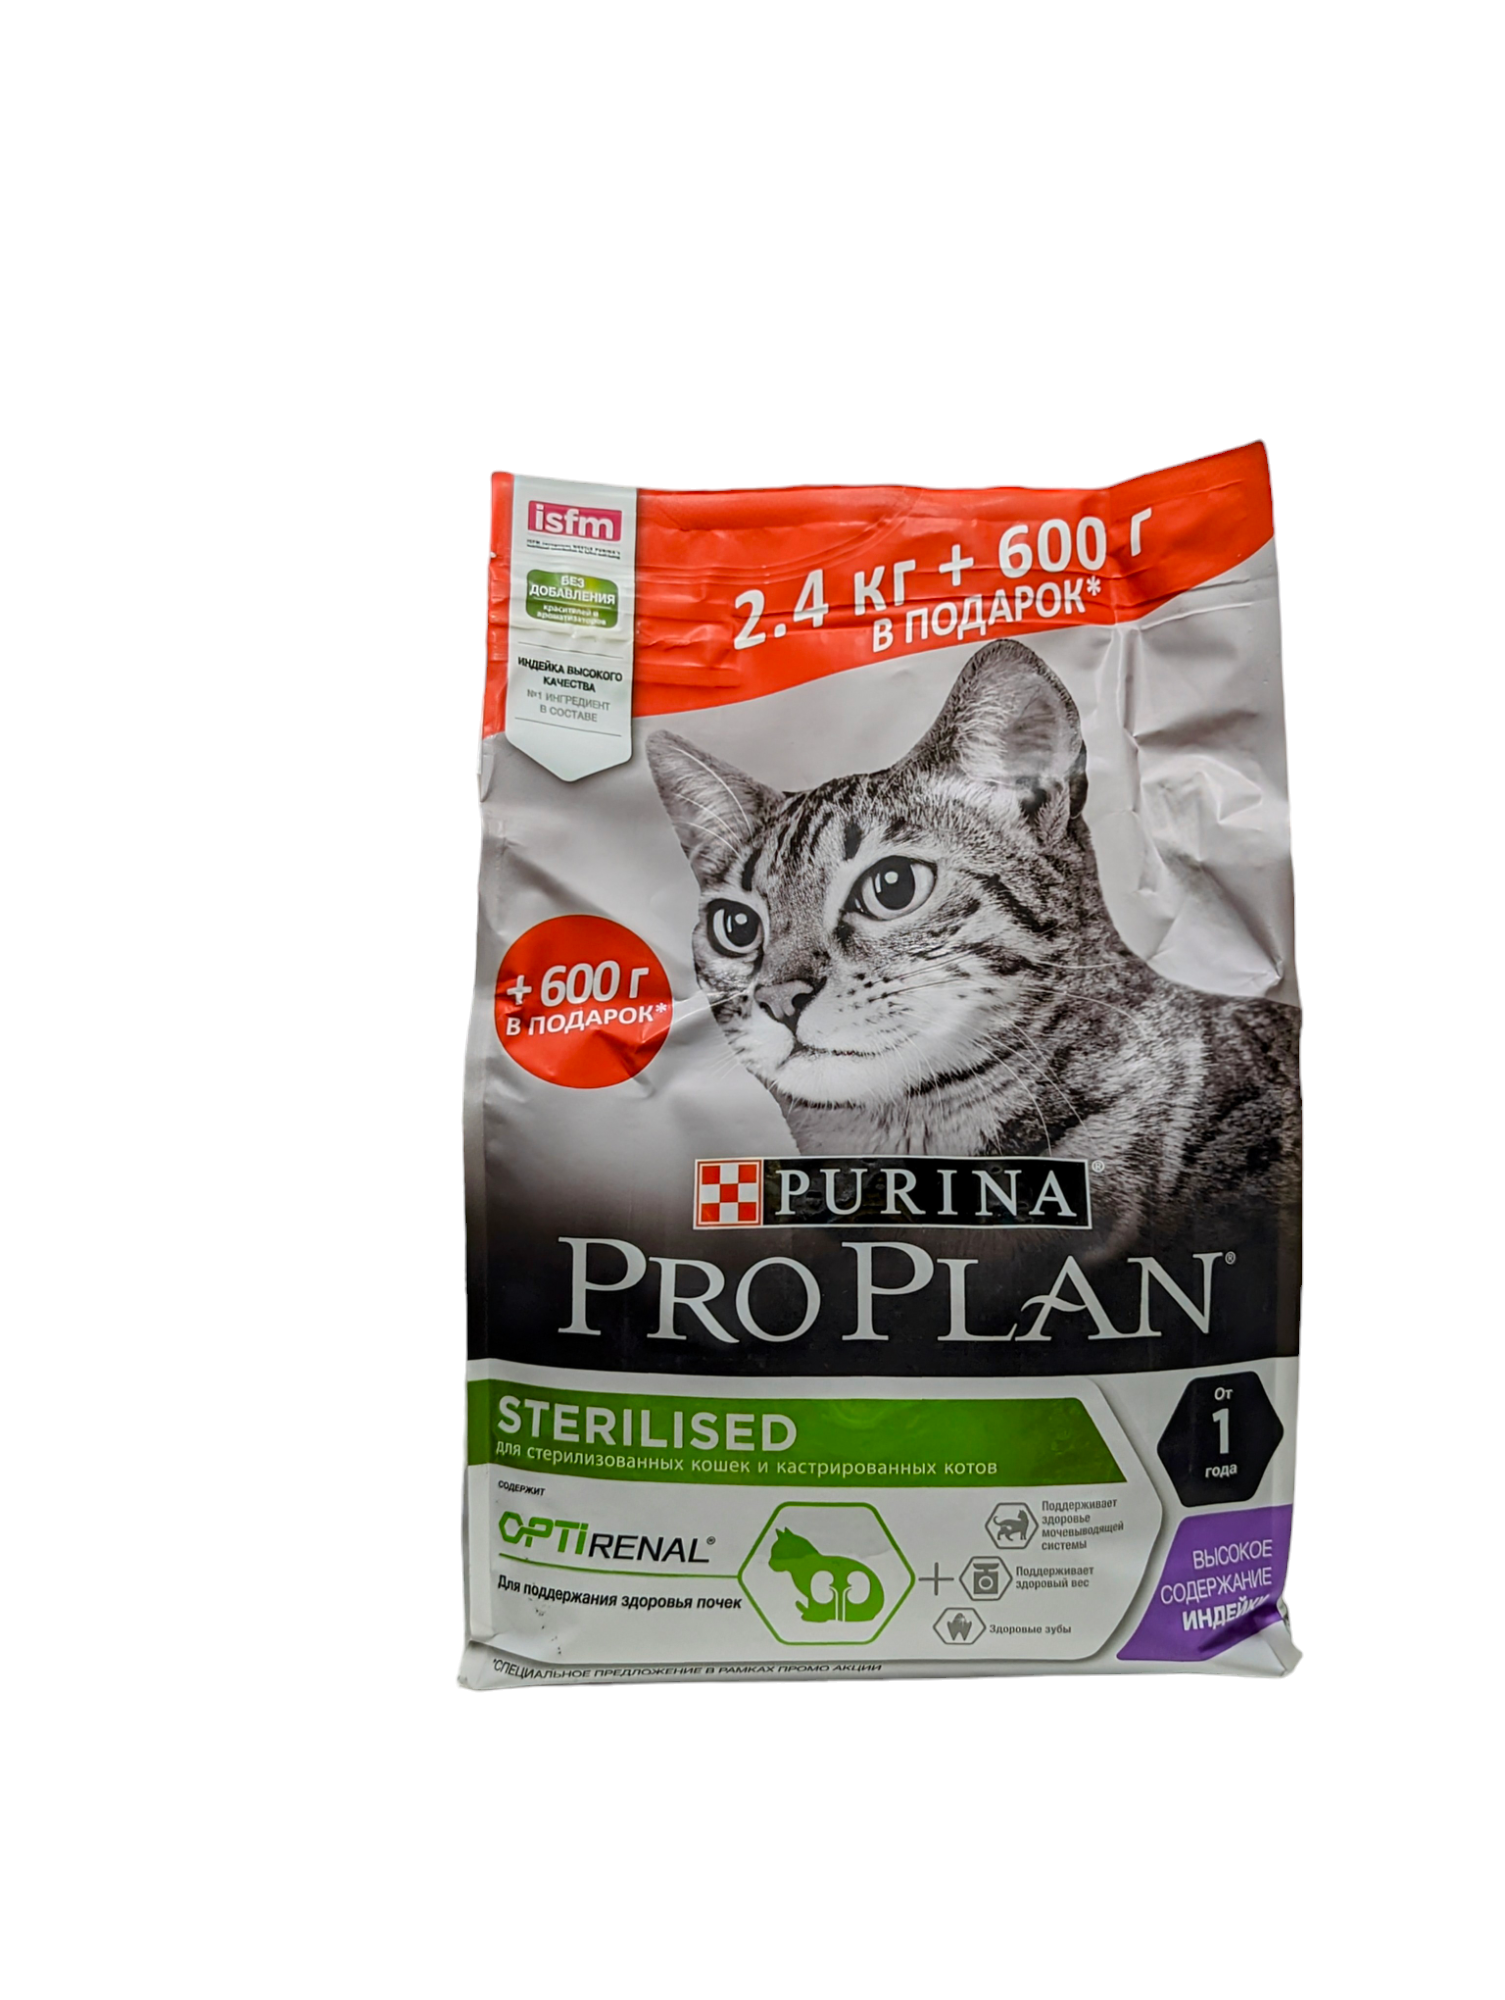 Сухой корм Pro Plan для стерилизованных кошек и кастрированных котов, с индейкой, 2,4 кг + 600 г в подарок